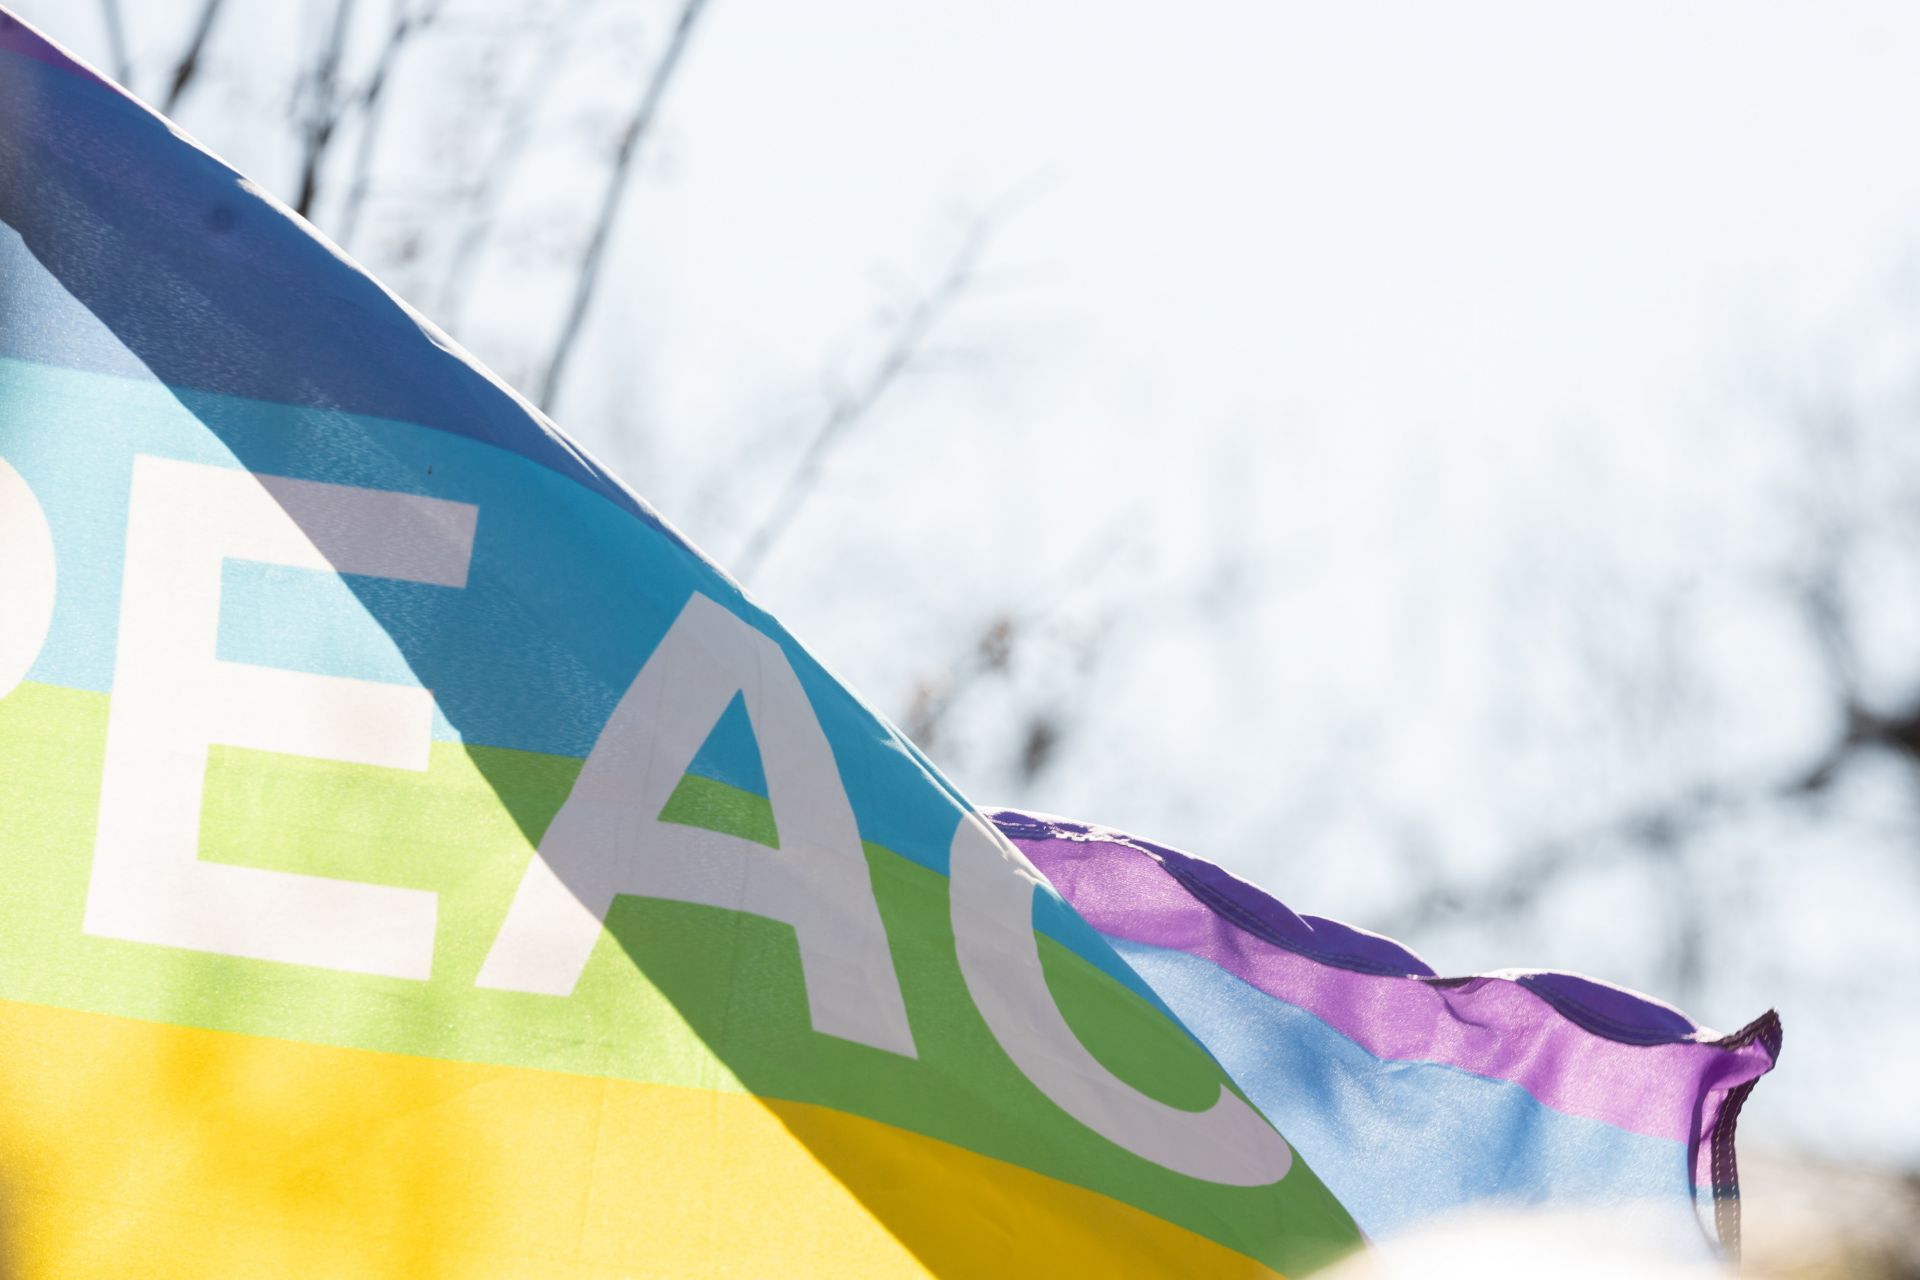 Regenbogenflagge mit Aufschrift "Peace"